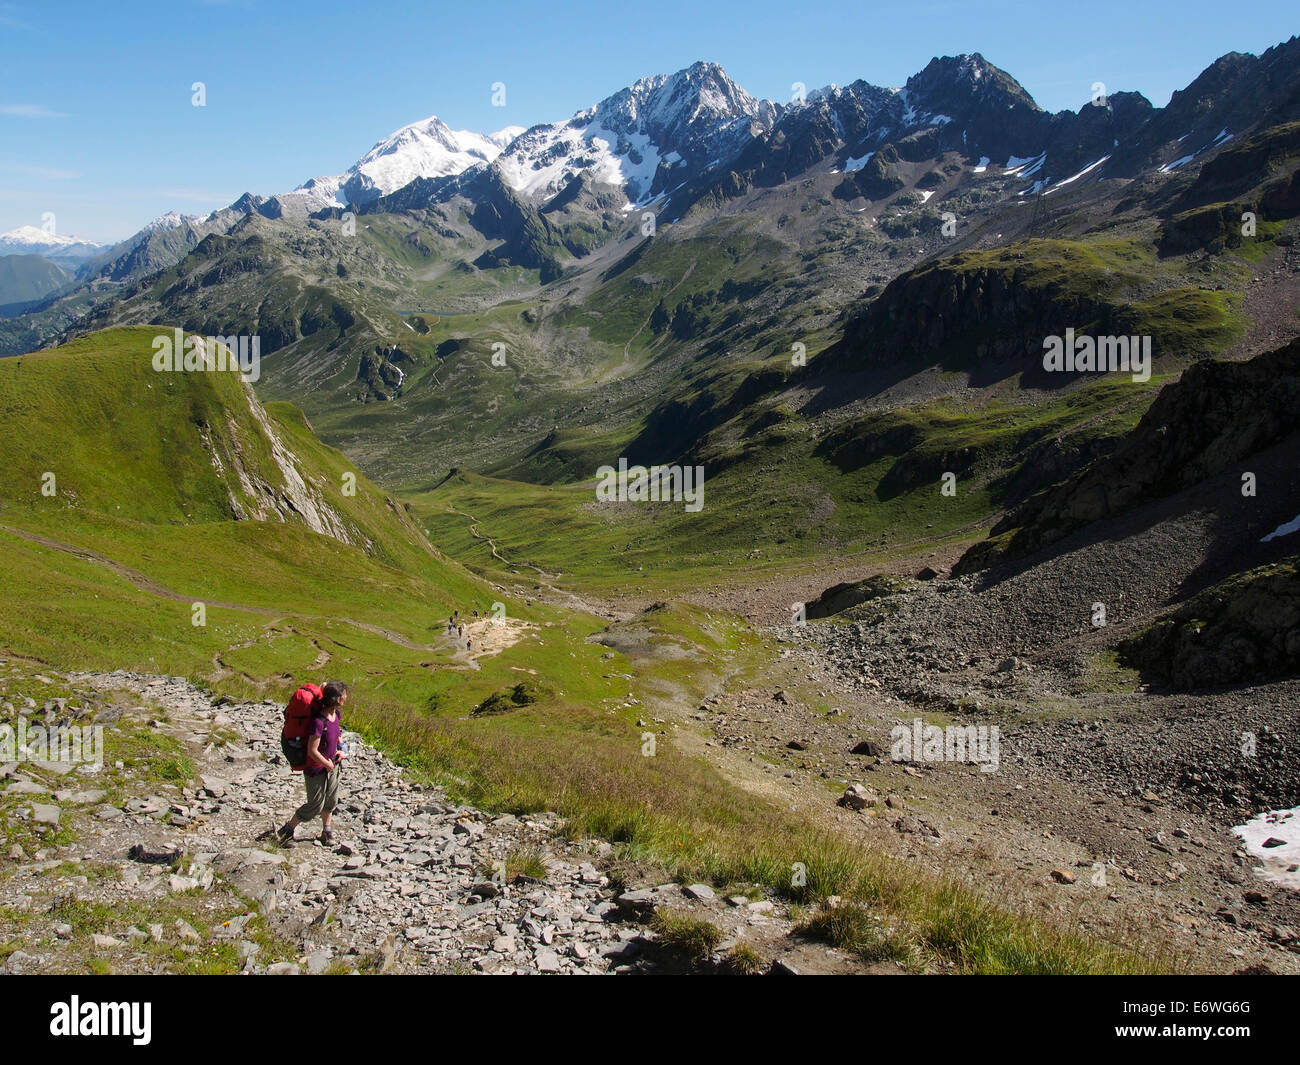 Hiking the Tour du Mont Blanc, Col du Bonhomme, France Stock Photo